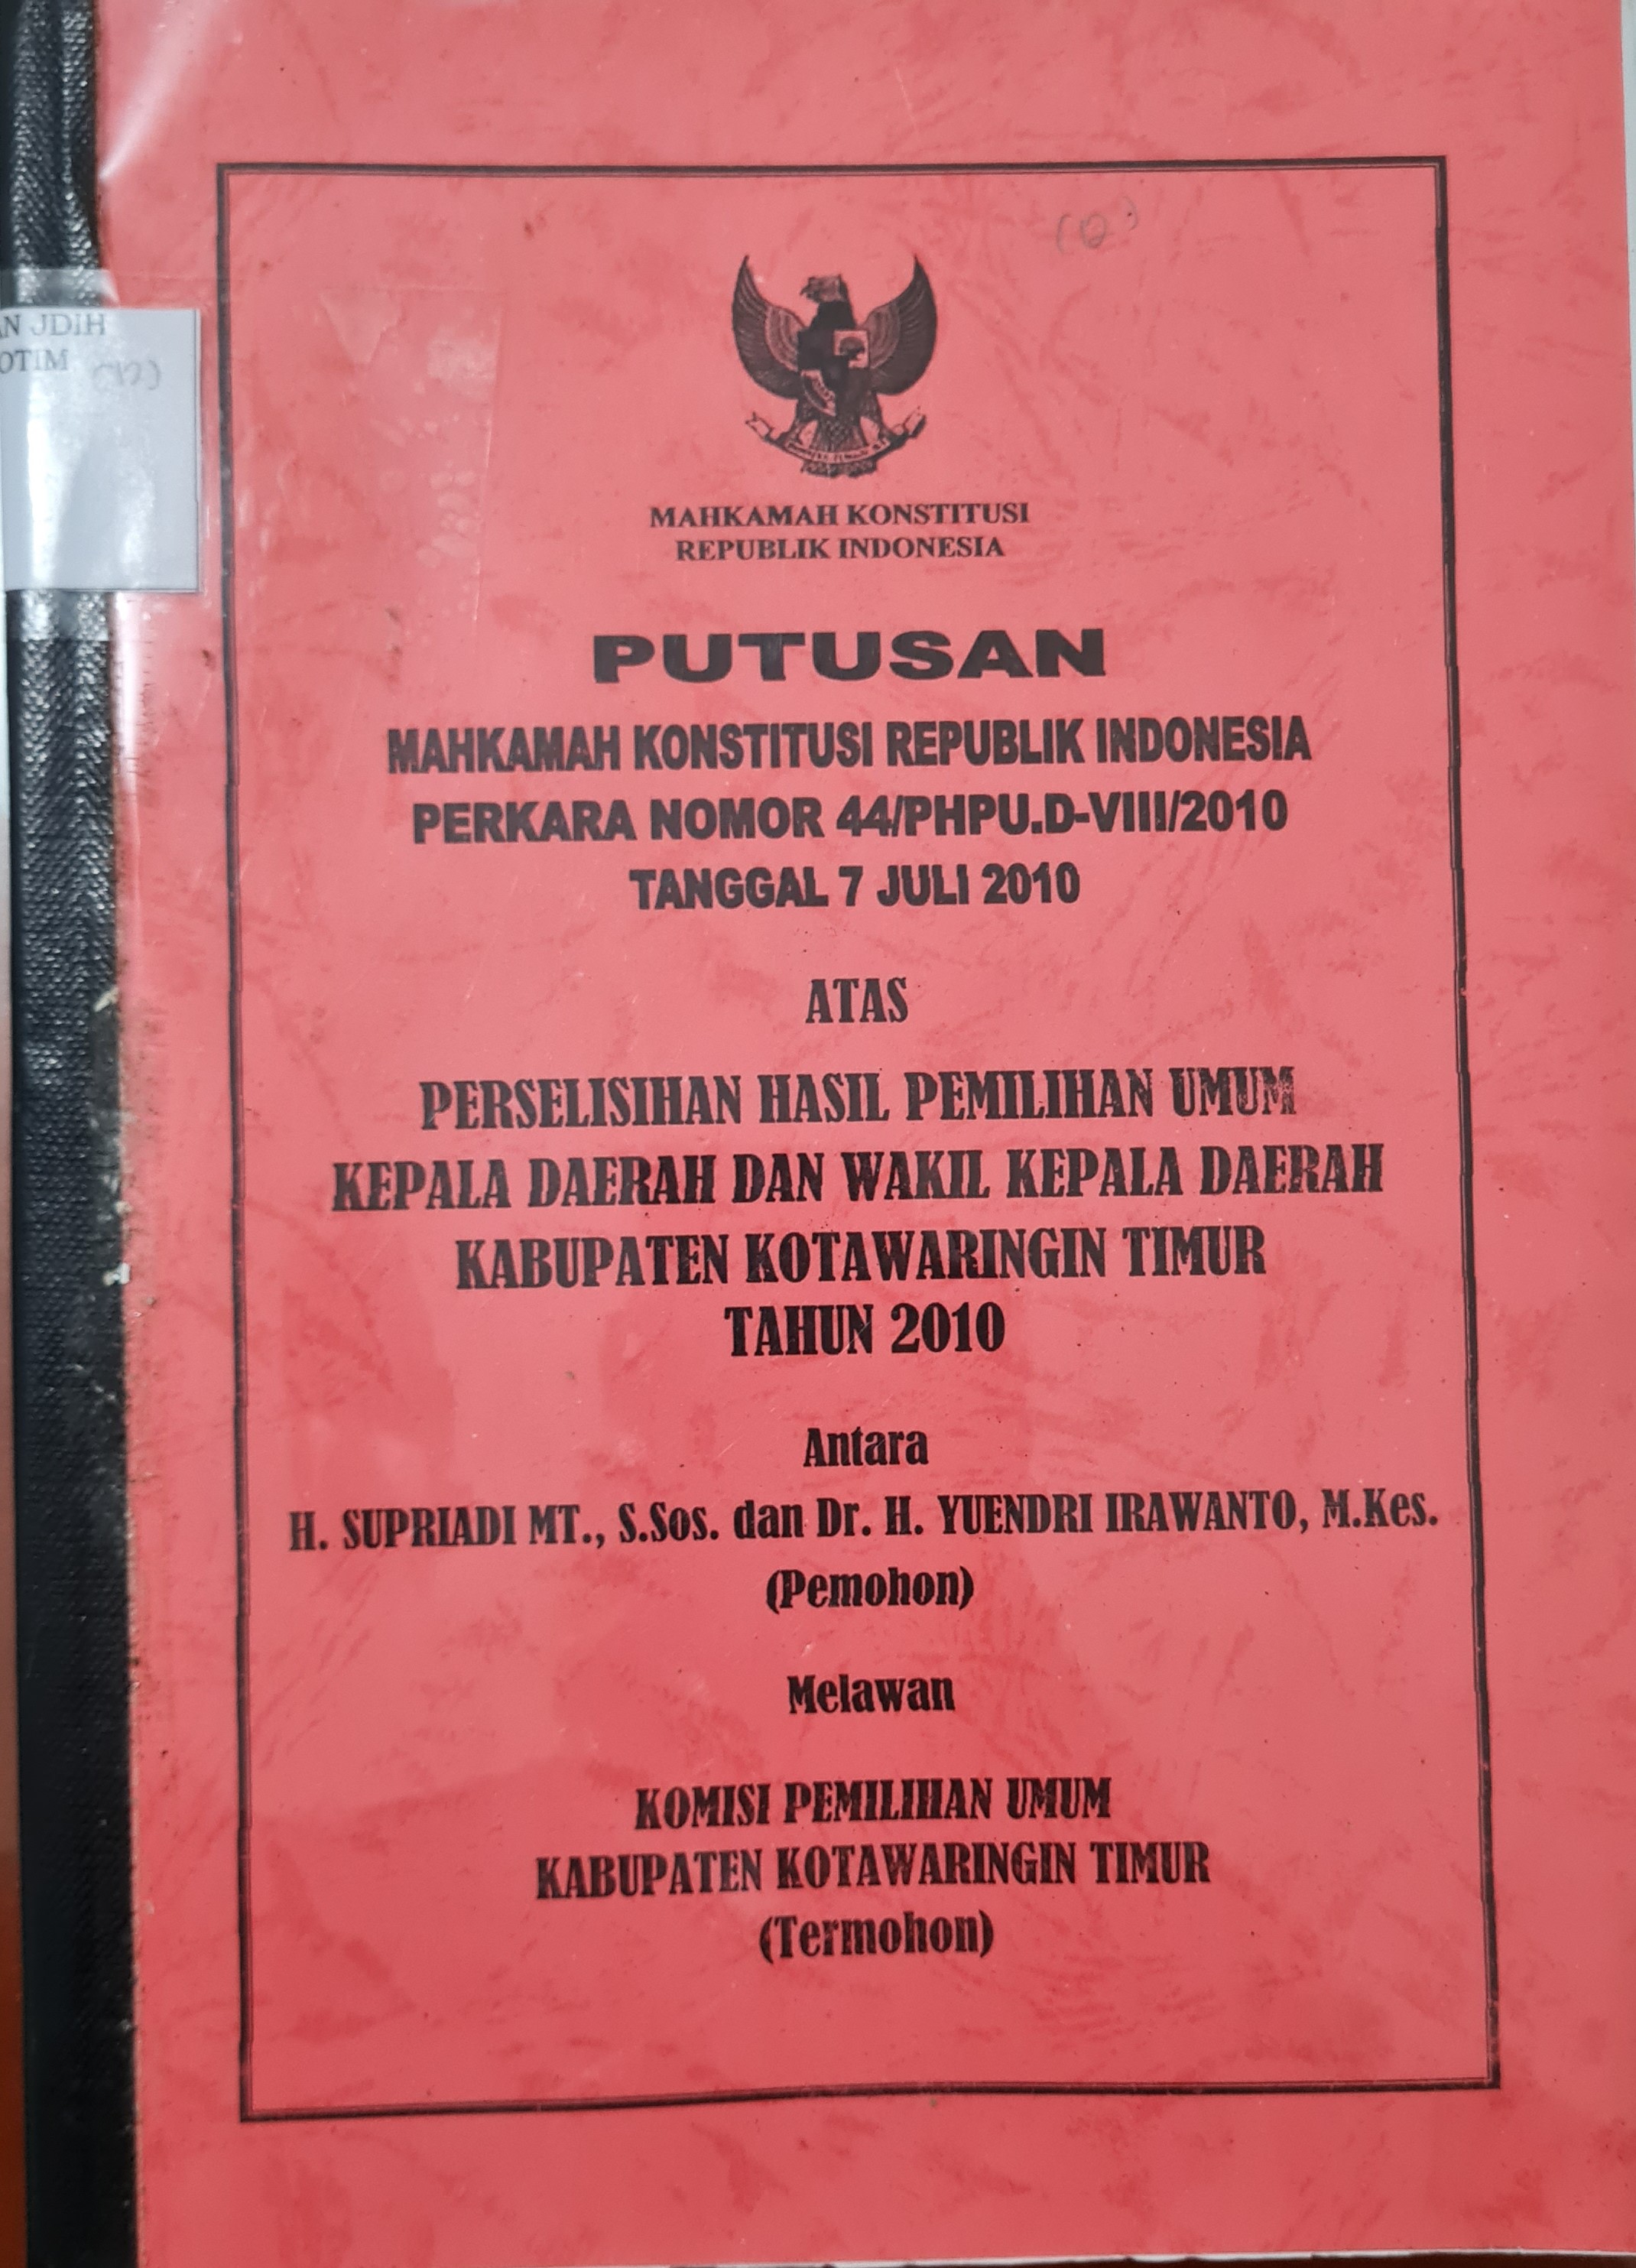 Putusan Mahkamah Konstitusi Republik Indonesia Nomor 44/PHPU.D-VIII/2010